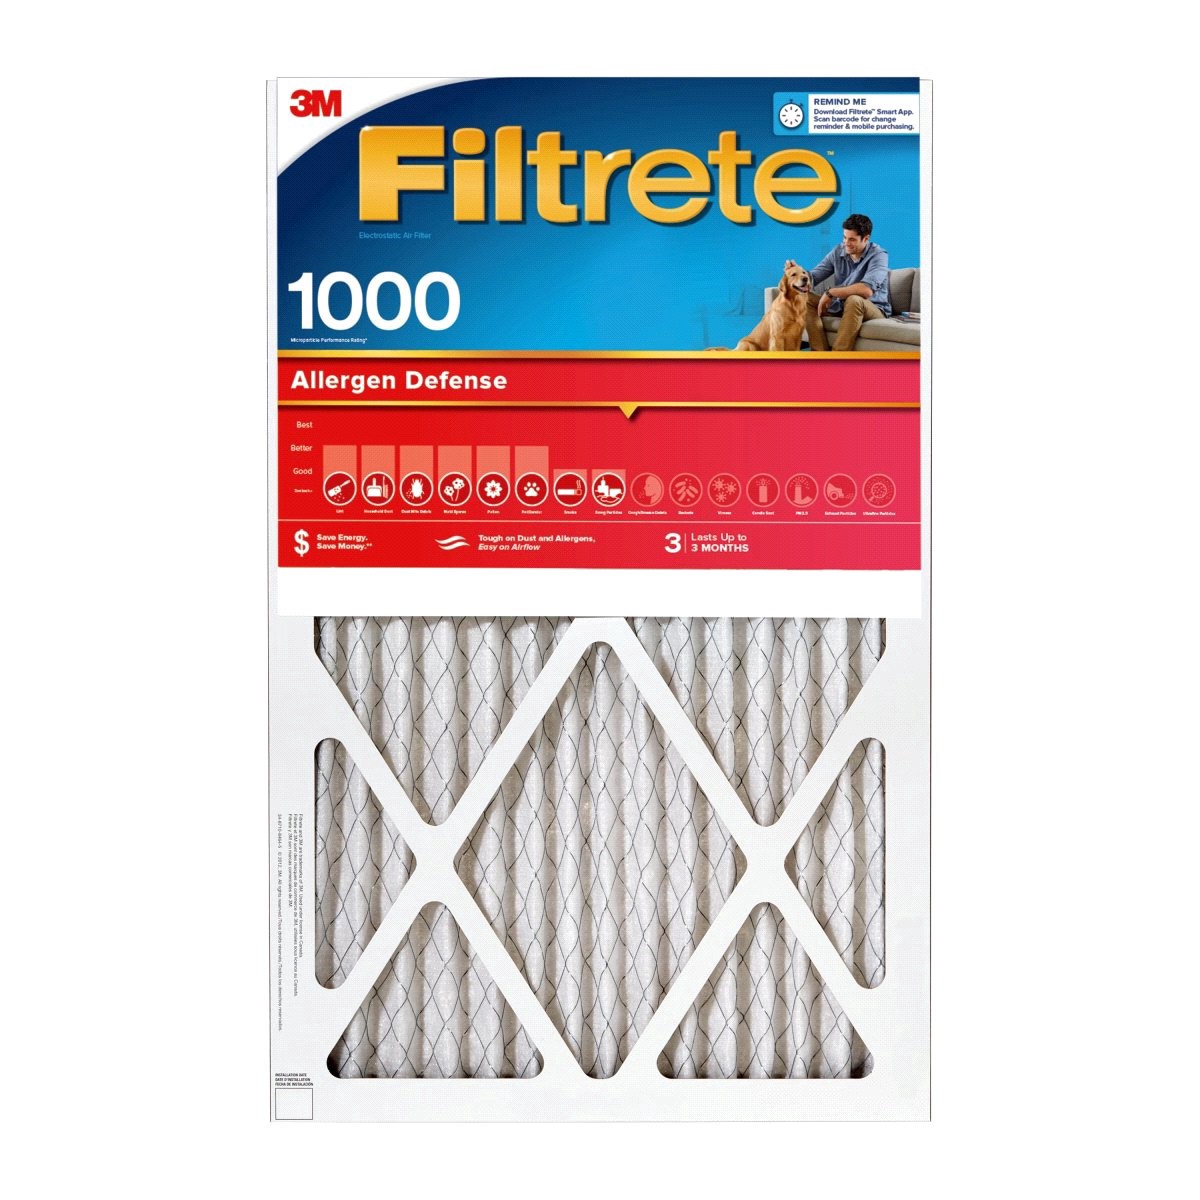 slide 1 of 29, 3M Filtrete Allergen Defense Protection 1000 Micro Allergen Filter, 16 in x 20 in